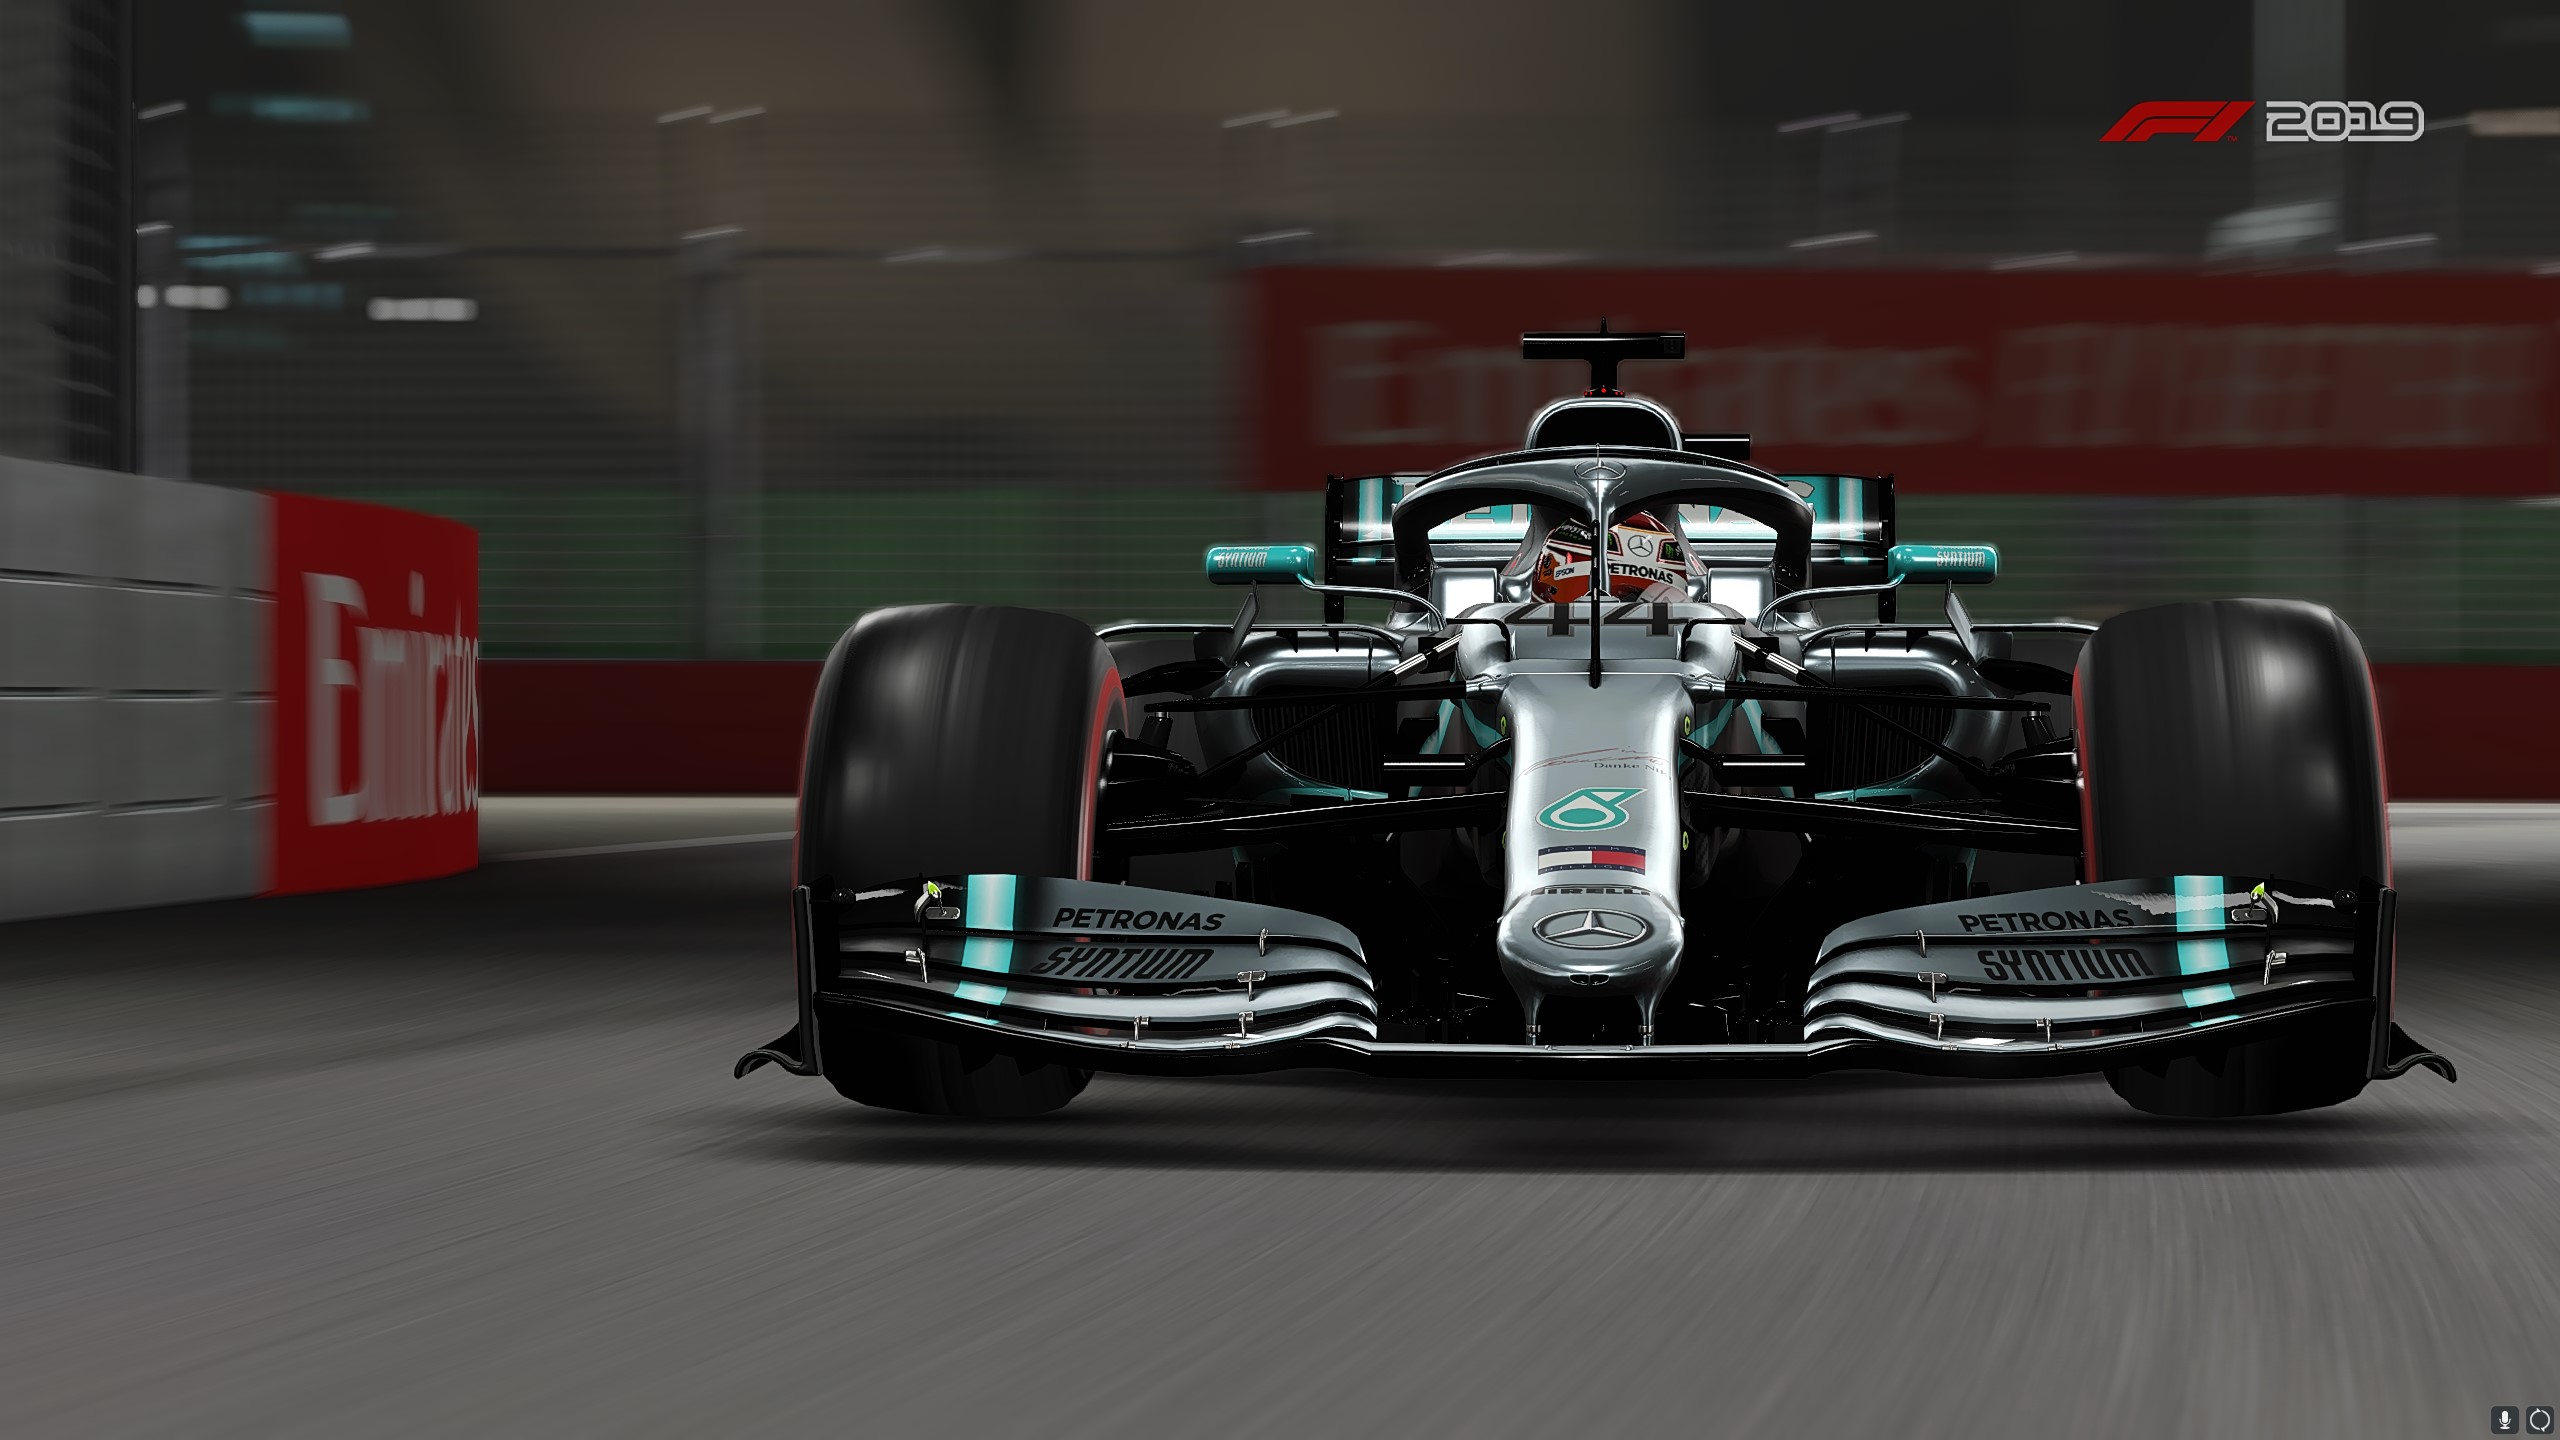 video game, f1 2019, mercedes amg f1 w10 eq power, race car